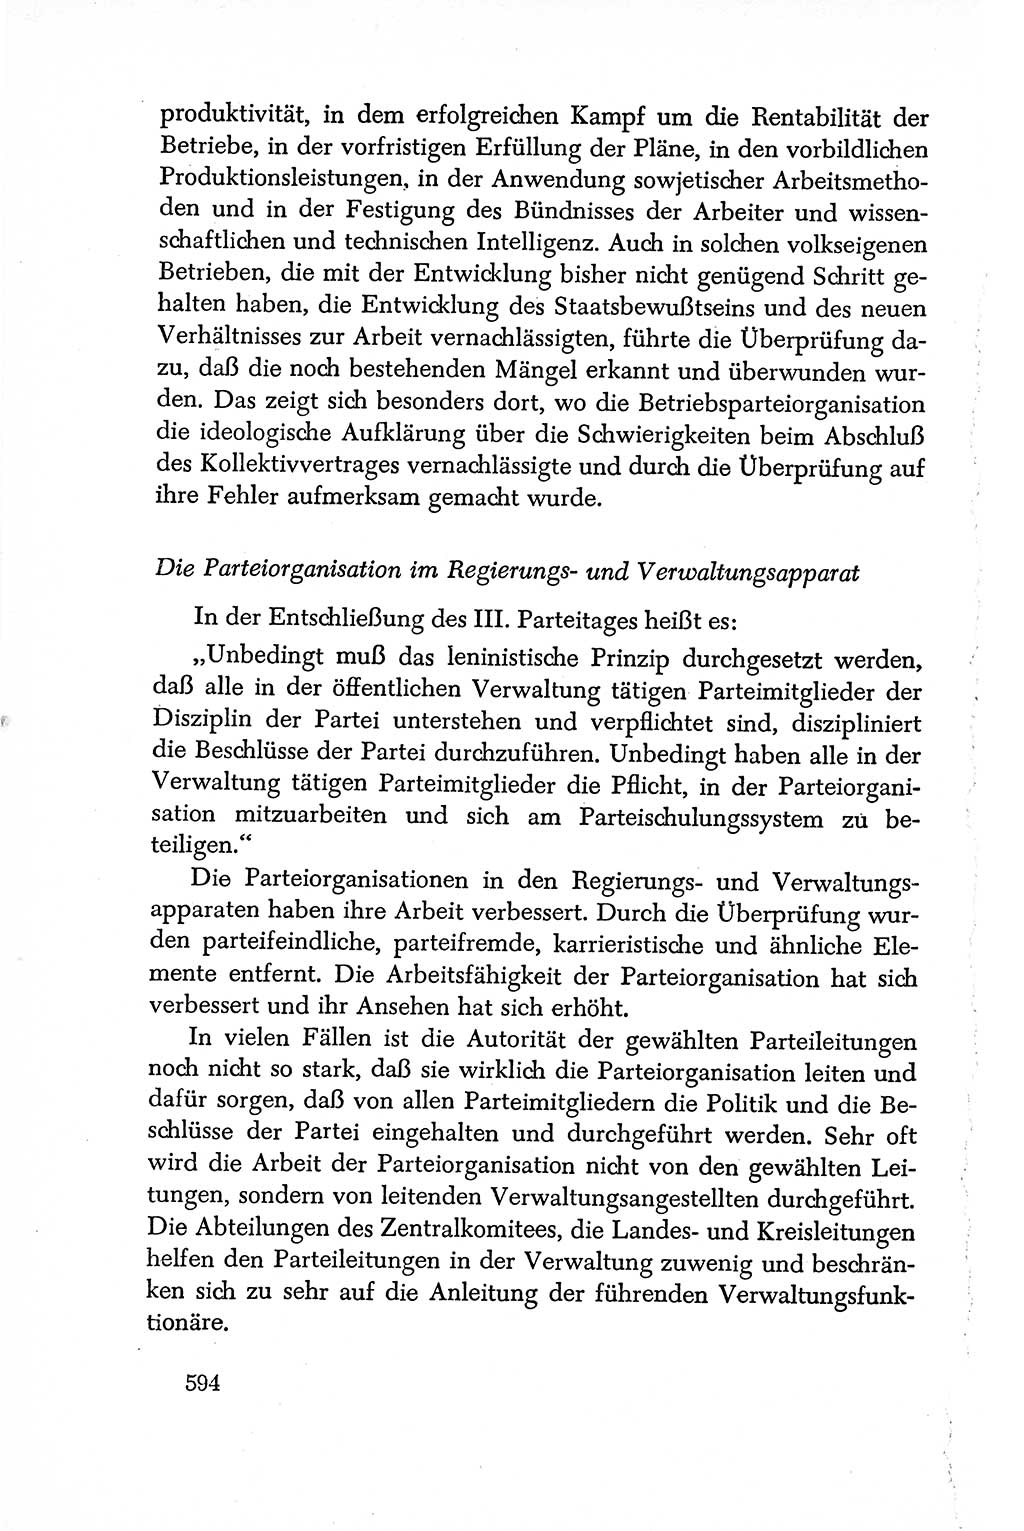 Dokumente der Sozialistischen Einheitspartei Deutschlands (SED) [Deutsche Demokratische Republik (DDR)] 1950-1952, Seite 594 (Dok. SED DDR 1950-1952, S. 594)